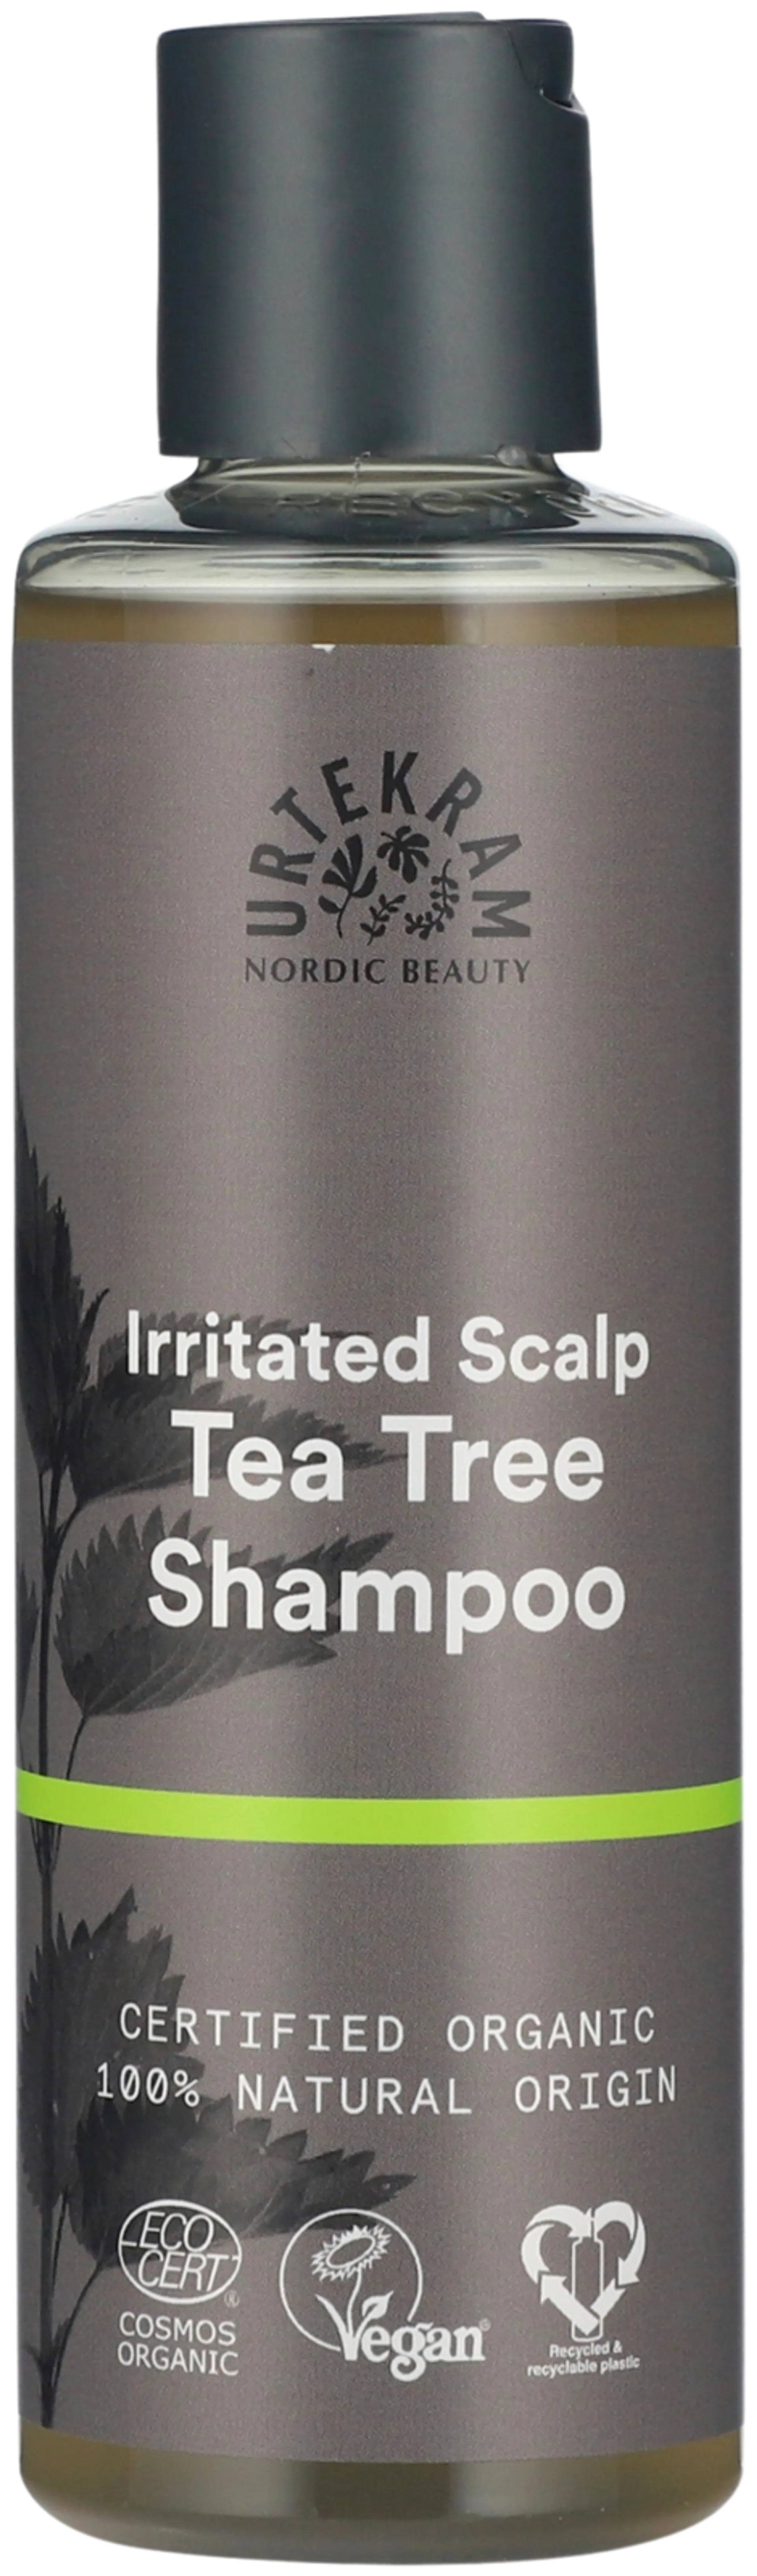 URTEKRAM luomu Tea Tree shampoo 250ml